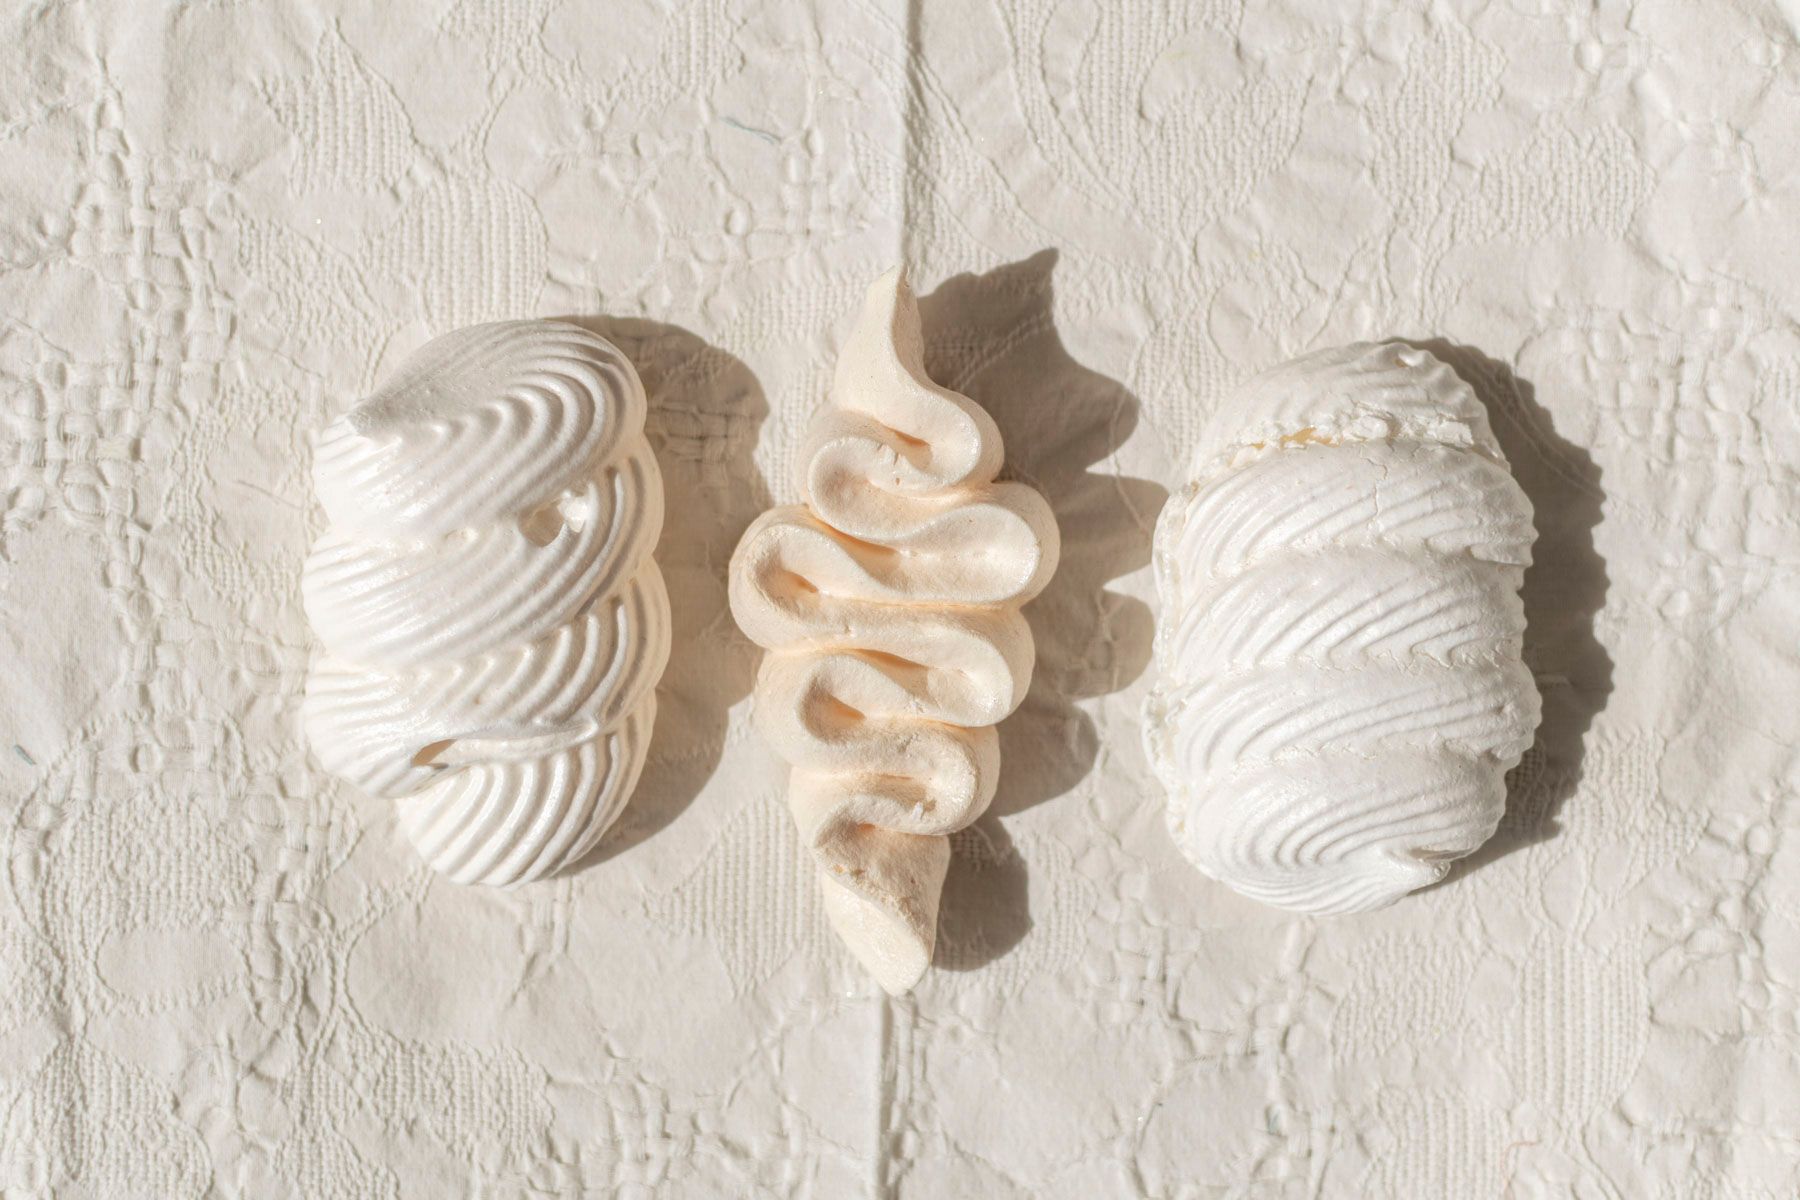 trio de meringues réalisées avec le cours "Les meringues" d'Artesane